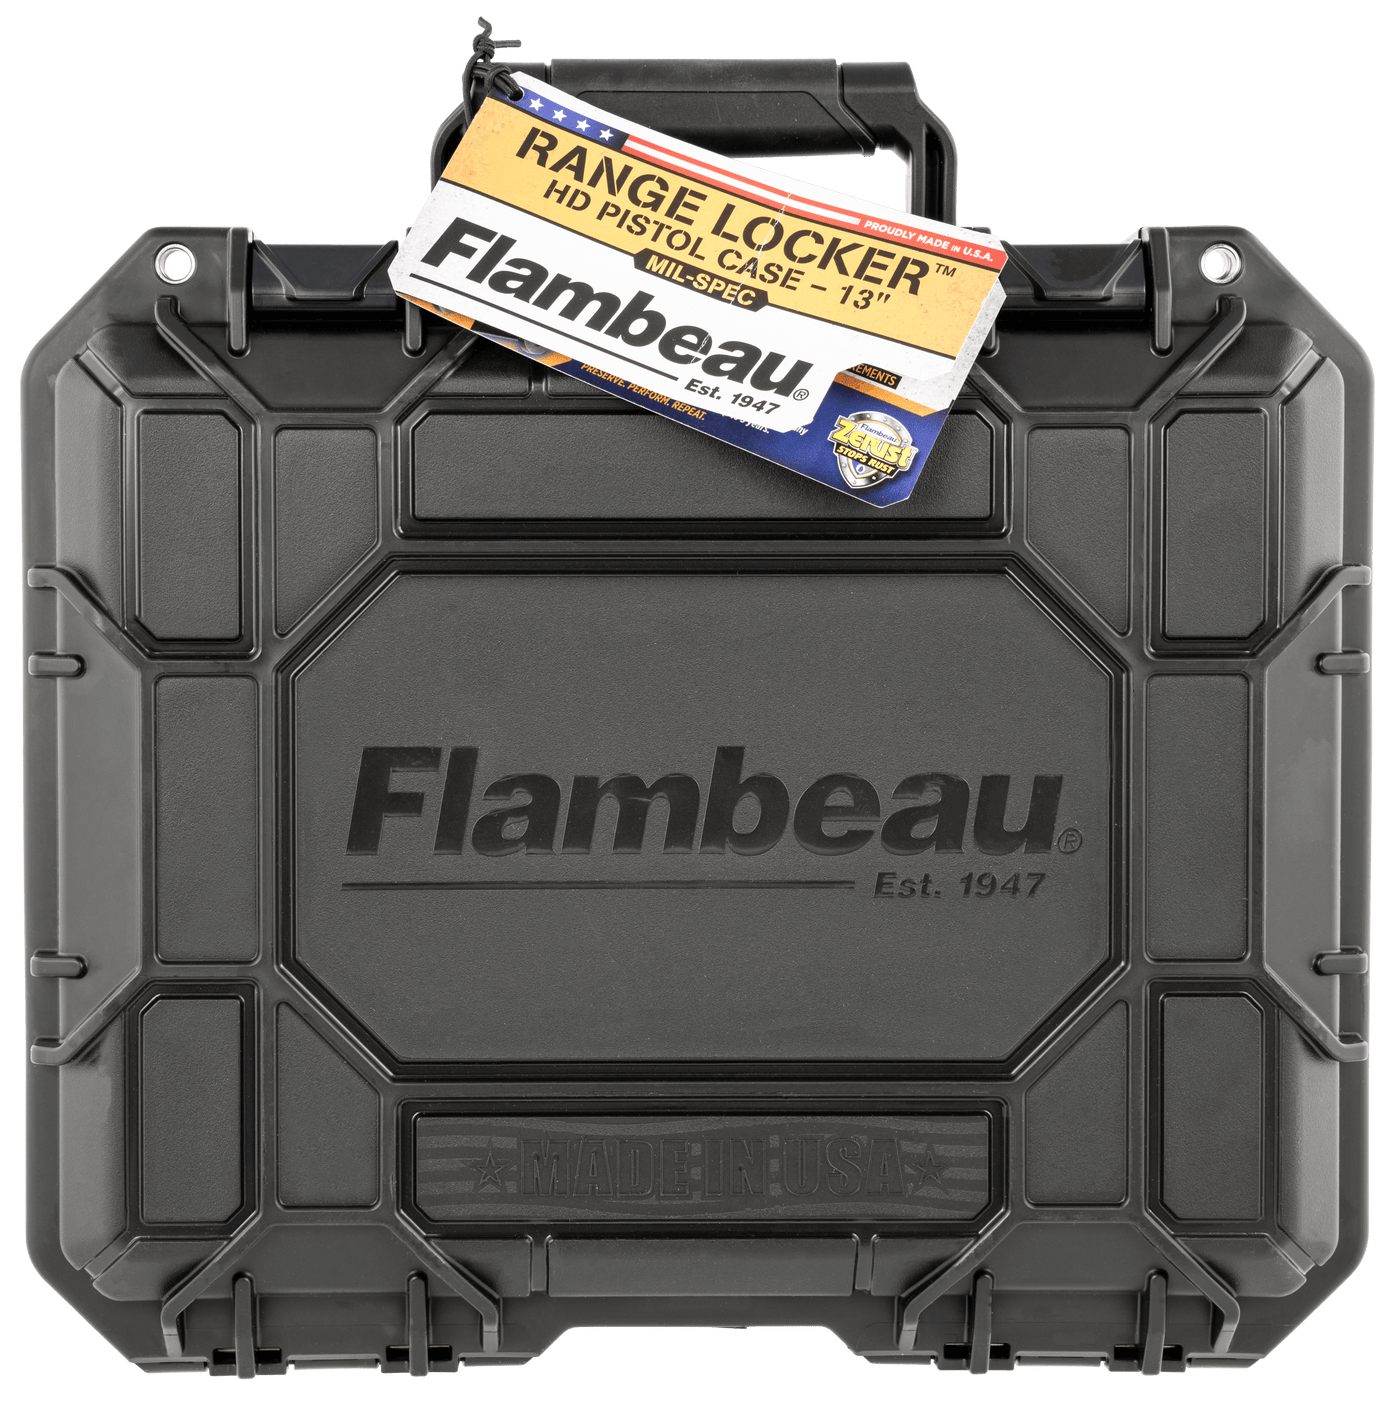 Flambeau Flambeau Range Locker, Flam 1312sn  13 Range Locker Hd Pistol Case Firearm Accessories